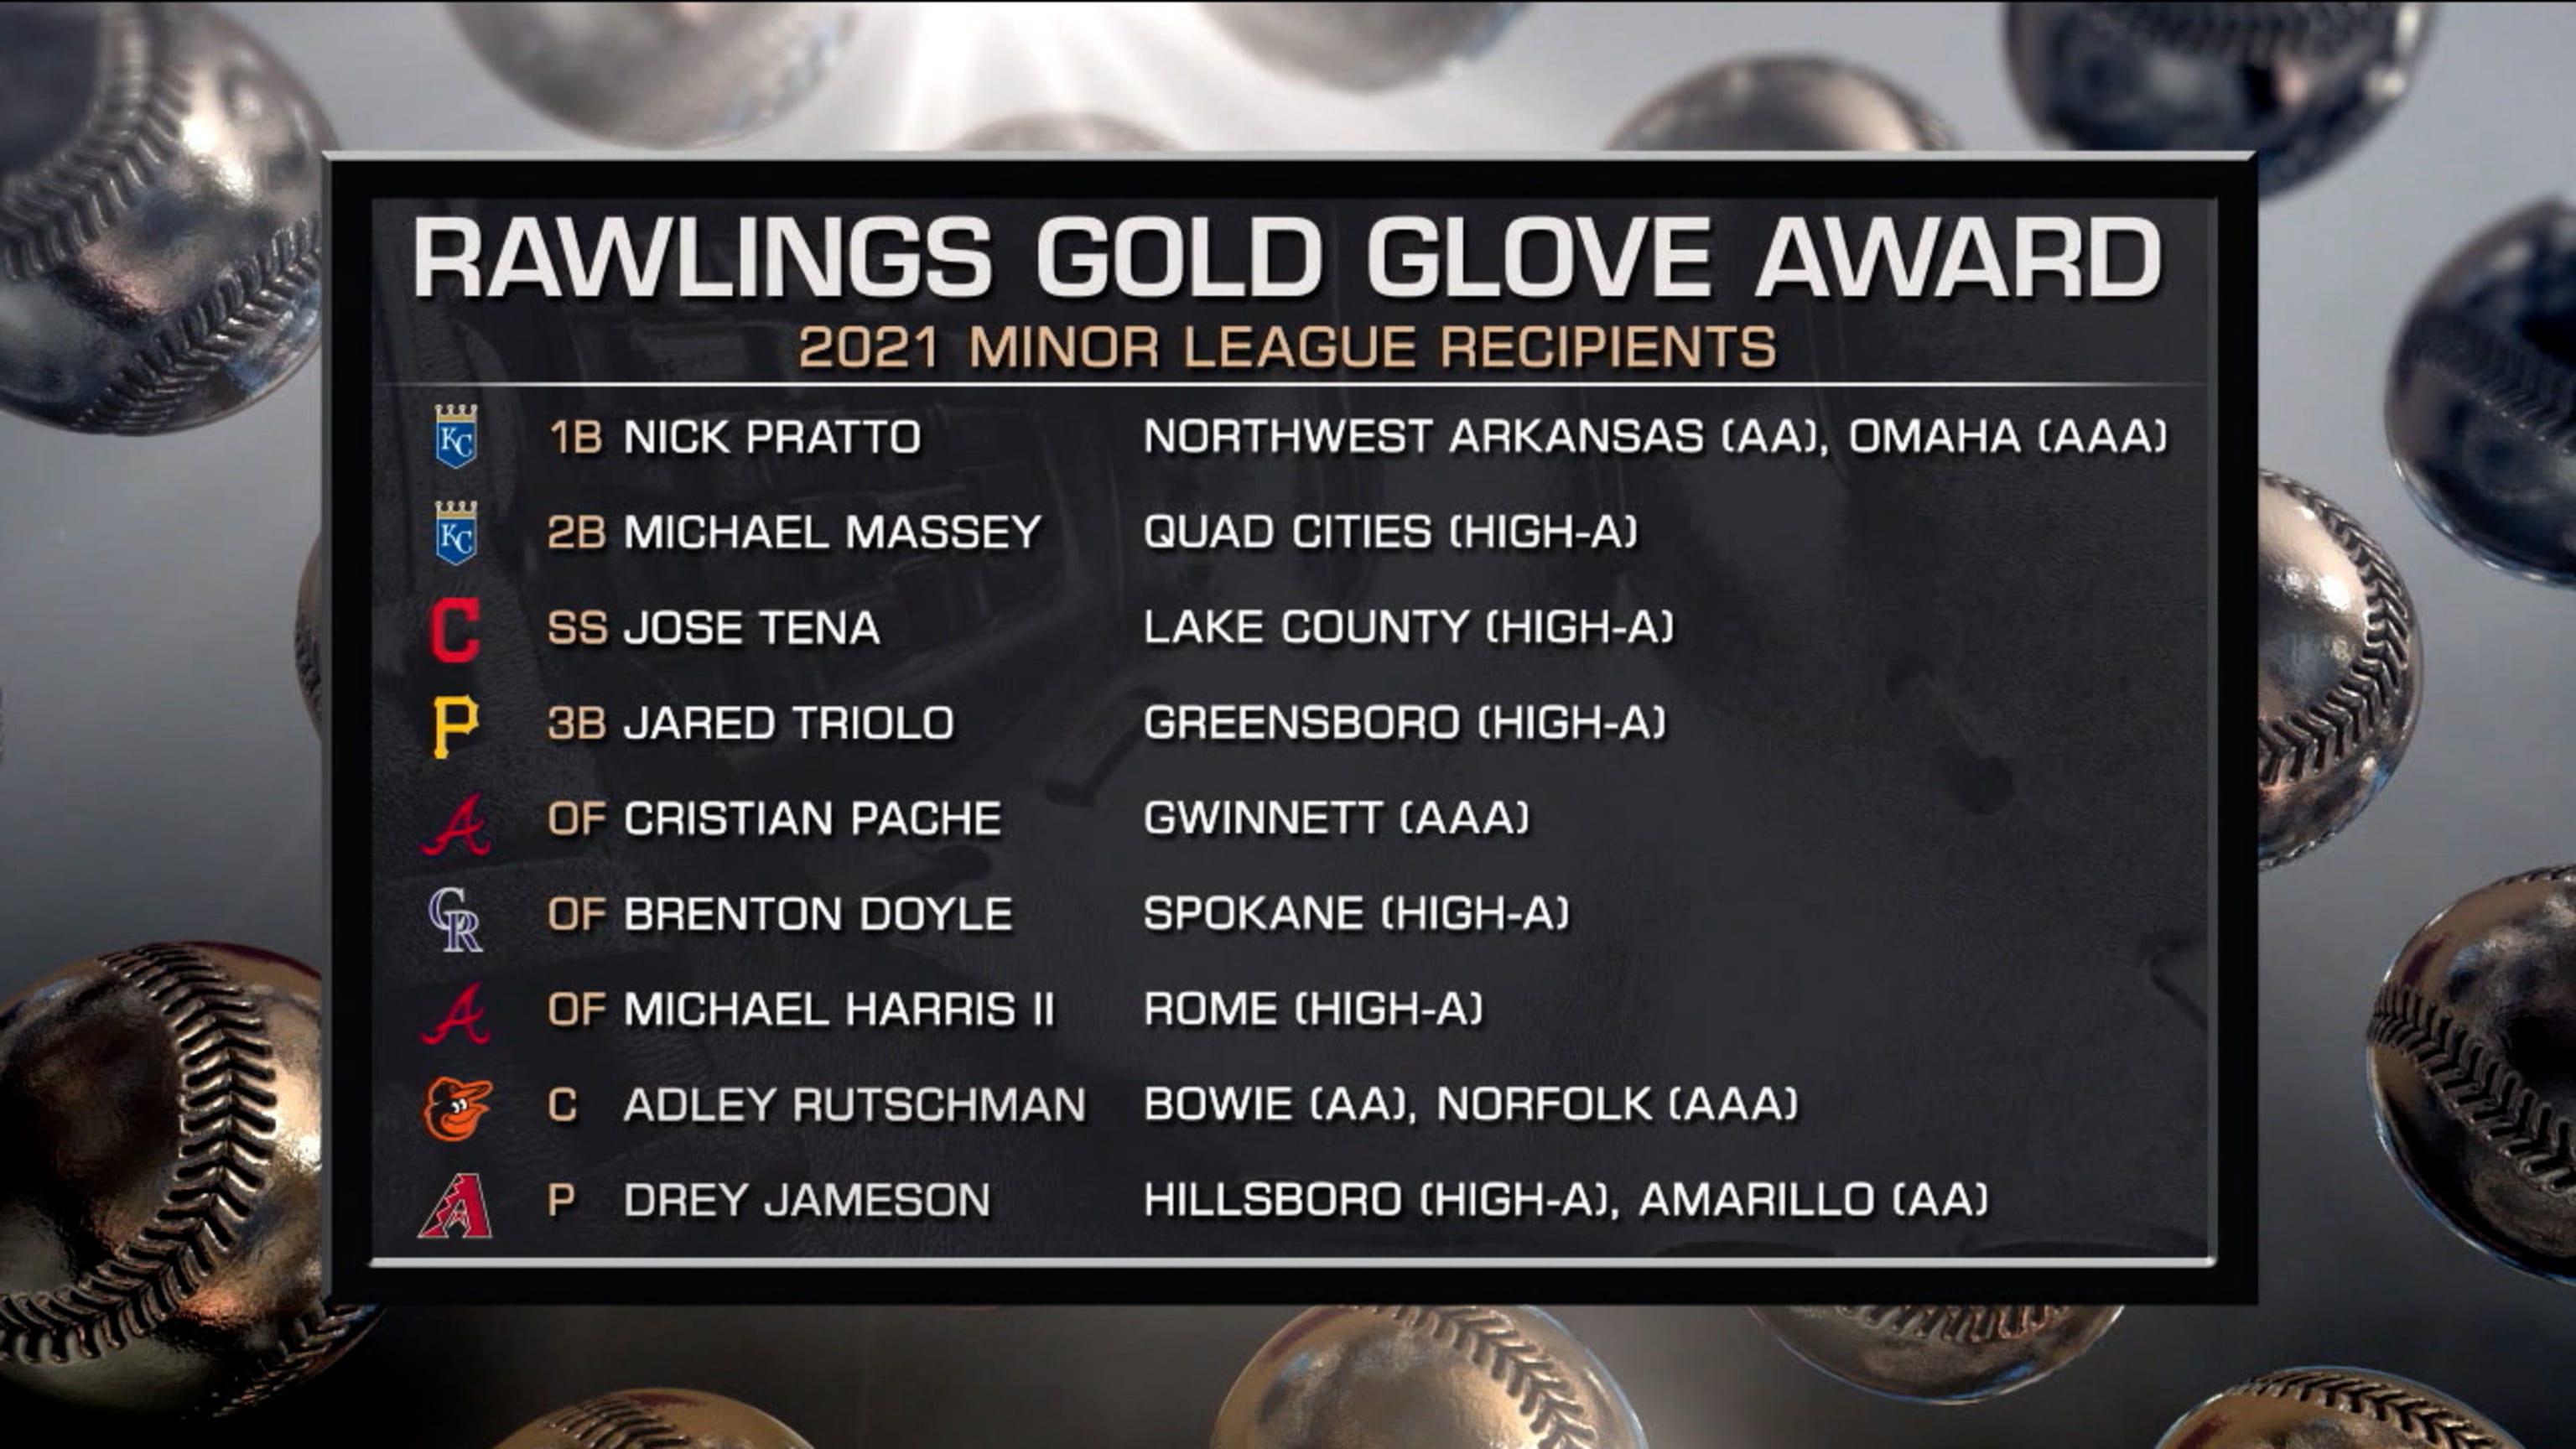 2021 Minor League Gold Glove Award winners